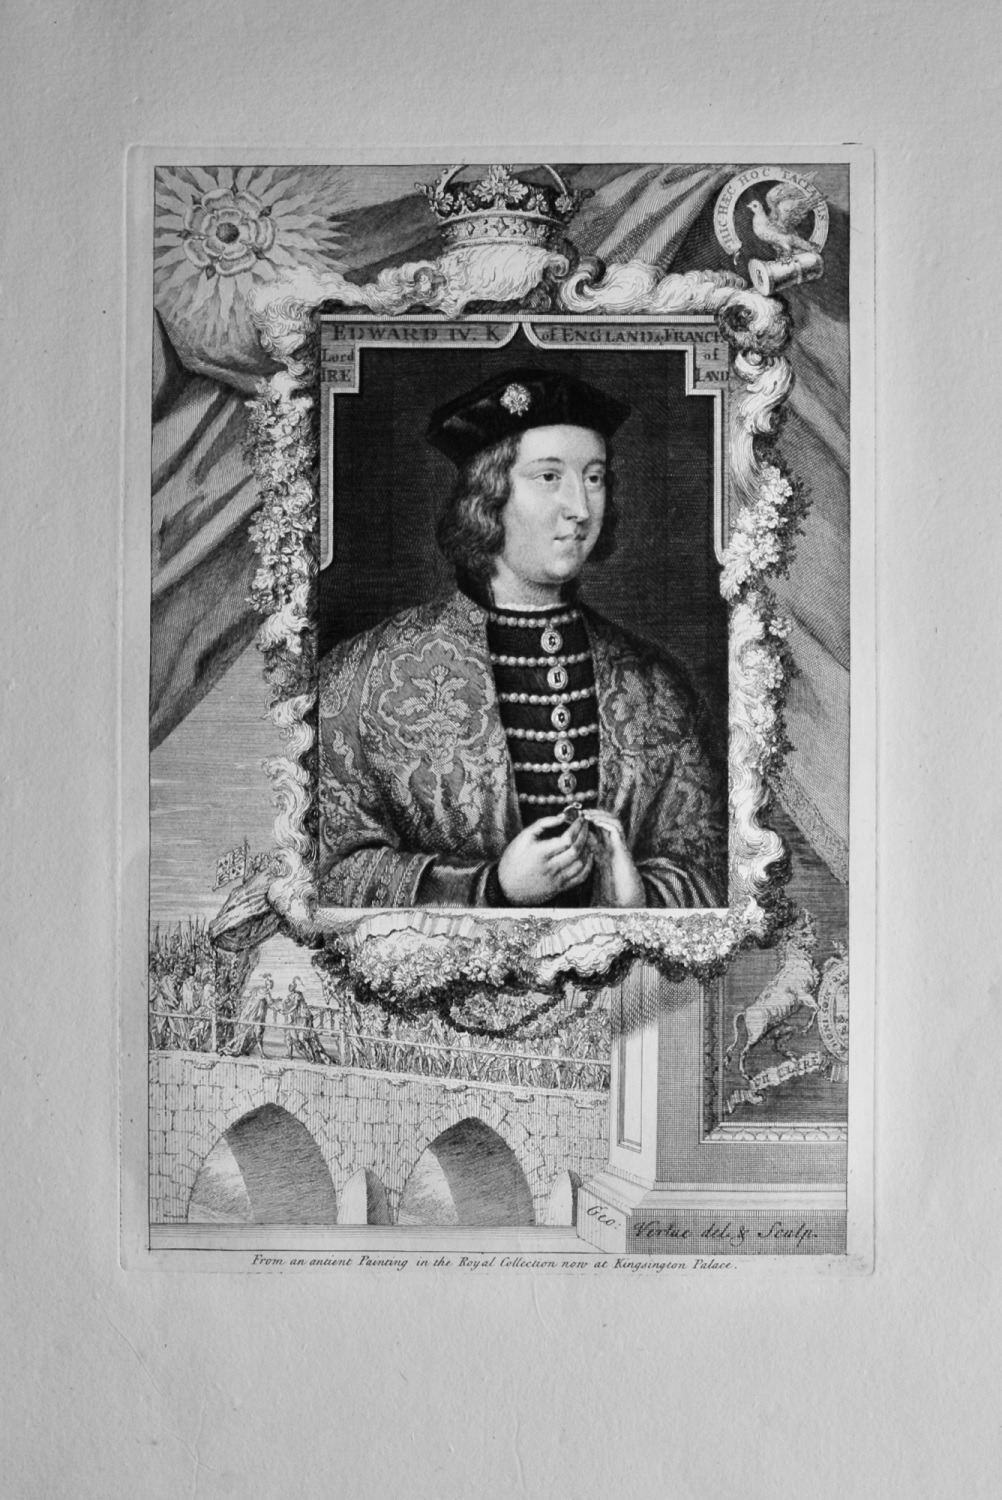 Edward IV. King of England & France, Lord of Ireland.  1736.